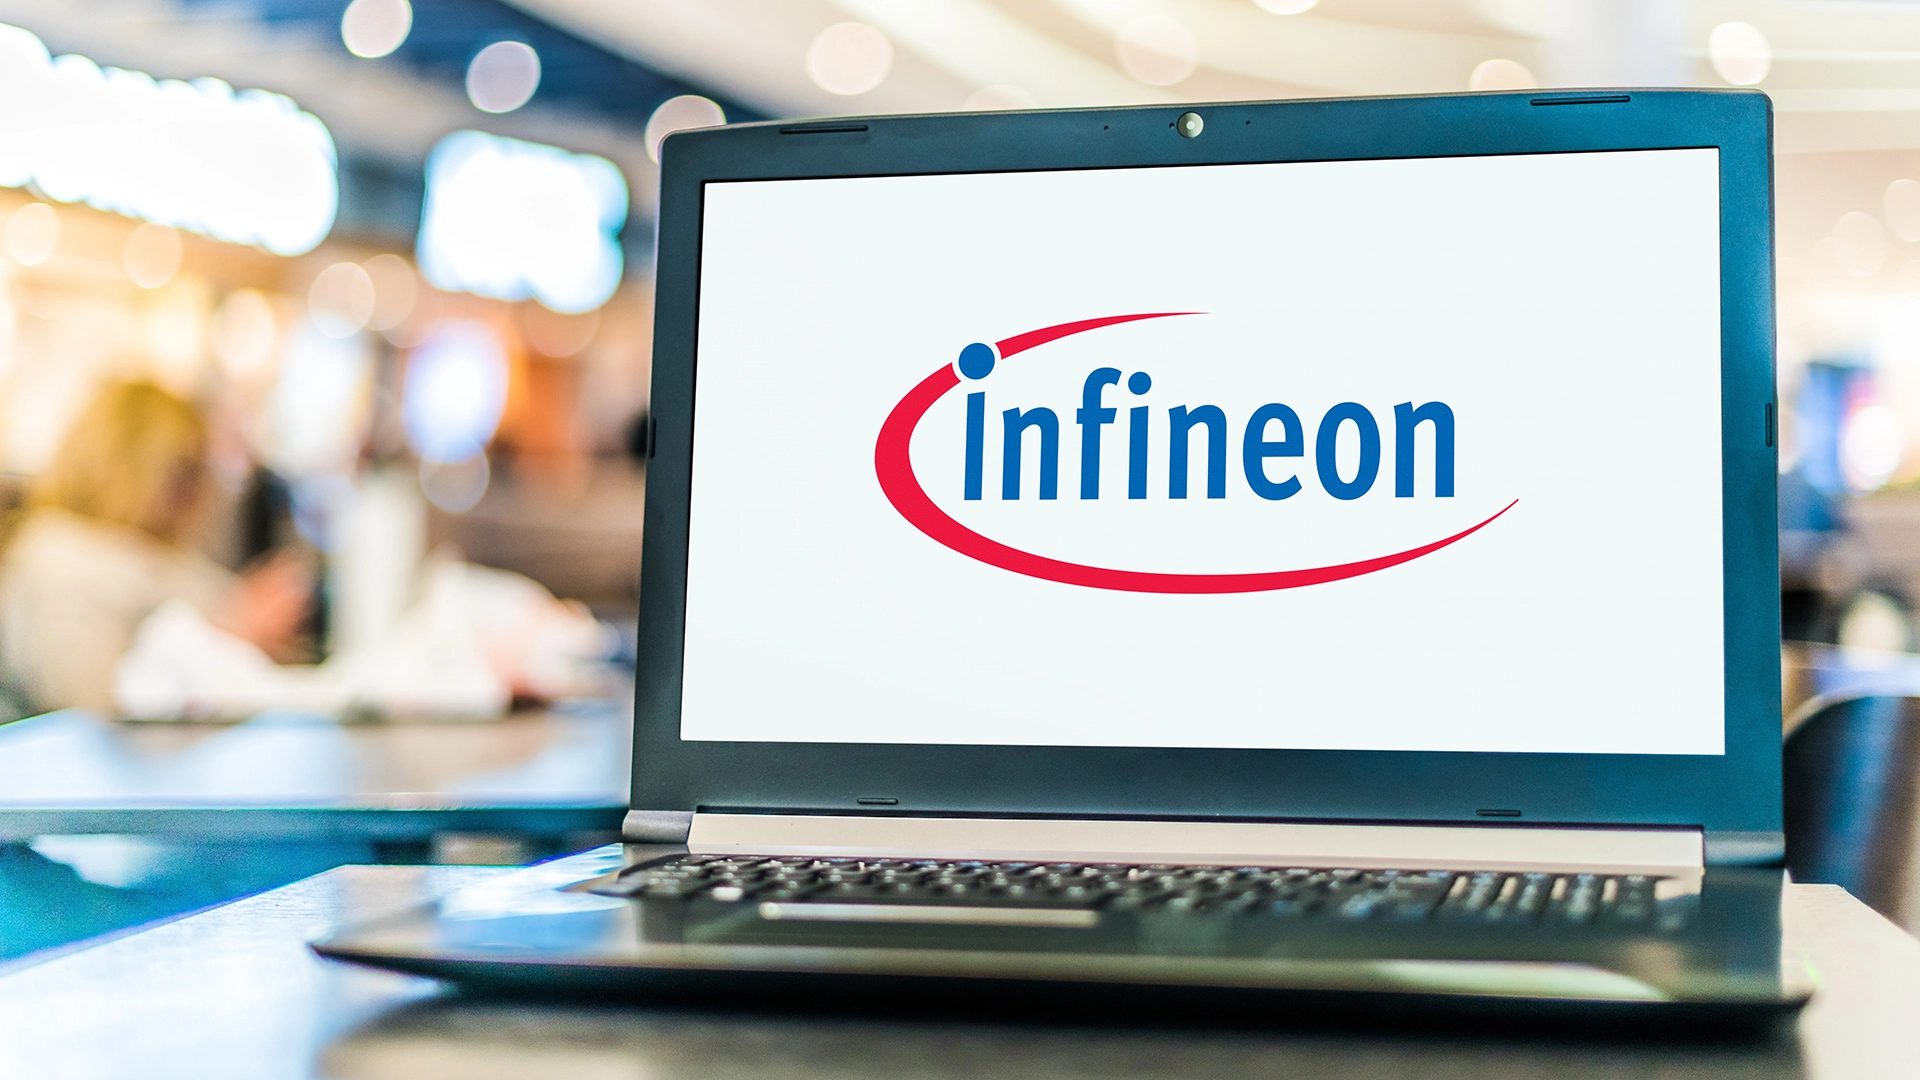 Gute Aussichten für die Aktie von Infineon? Das sagen Analysten (Foto: monticello/Shutterstock)